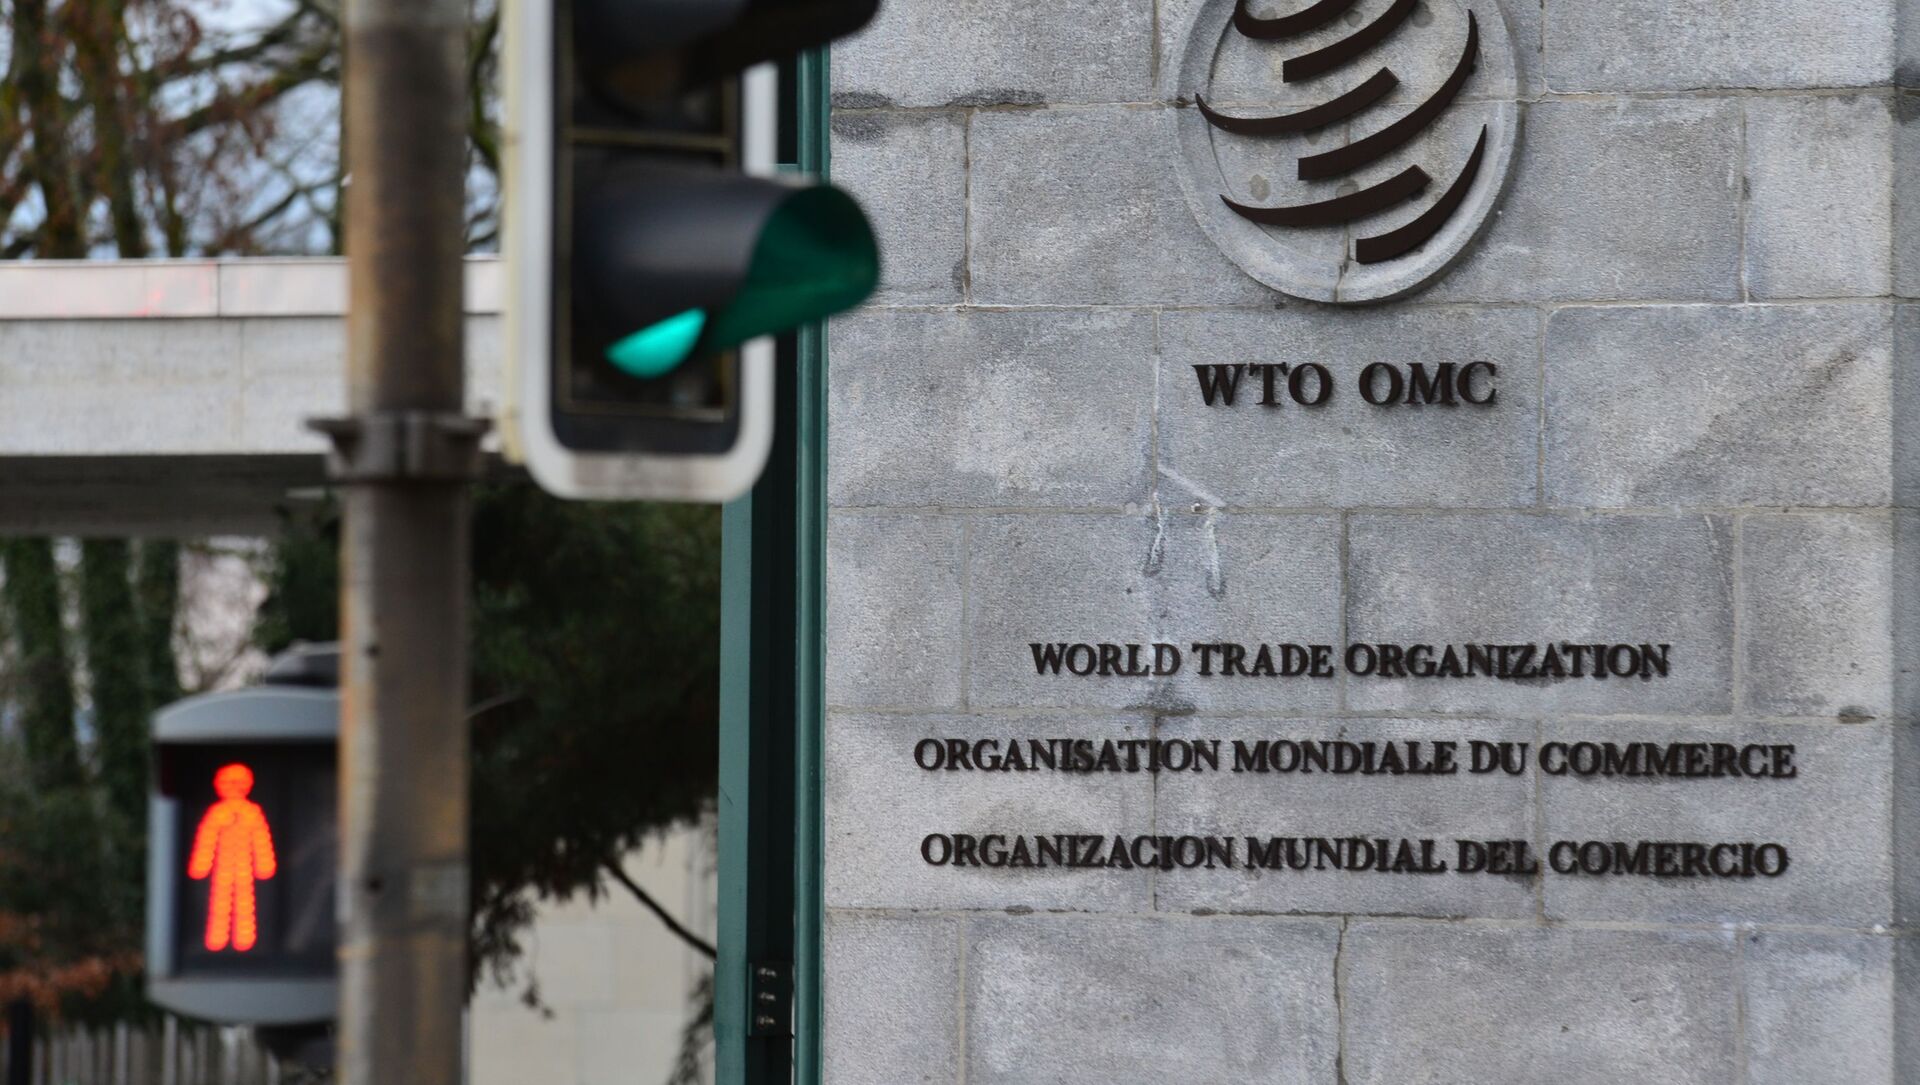 Эмблема Всемирной торговой организации (ВТО) возле здания штаб-квартиры организации в Женеве, фото из архива - Sputnik Azərbaycan, 1920, 11.06.2021